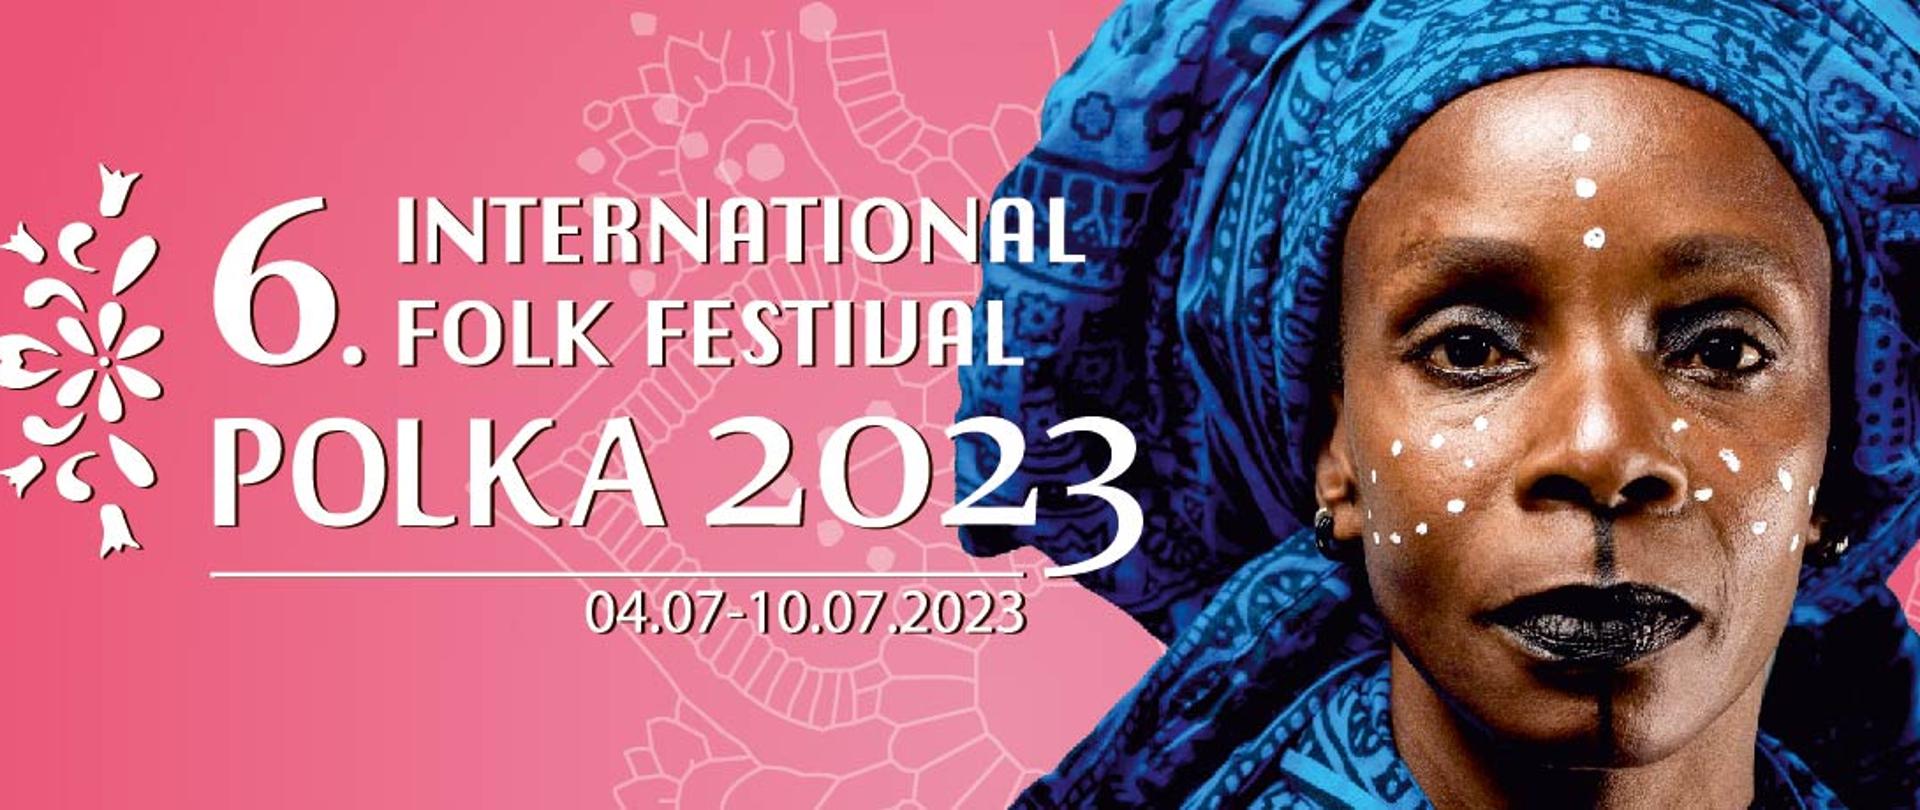 6. International Folk Festival Polka 2023 Konstantynów Łódzki 4-10 lipca. Czarnoskóra kobieta w niebieskiej chuście na głowie. Różowe tło.